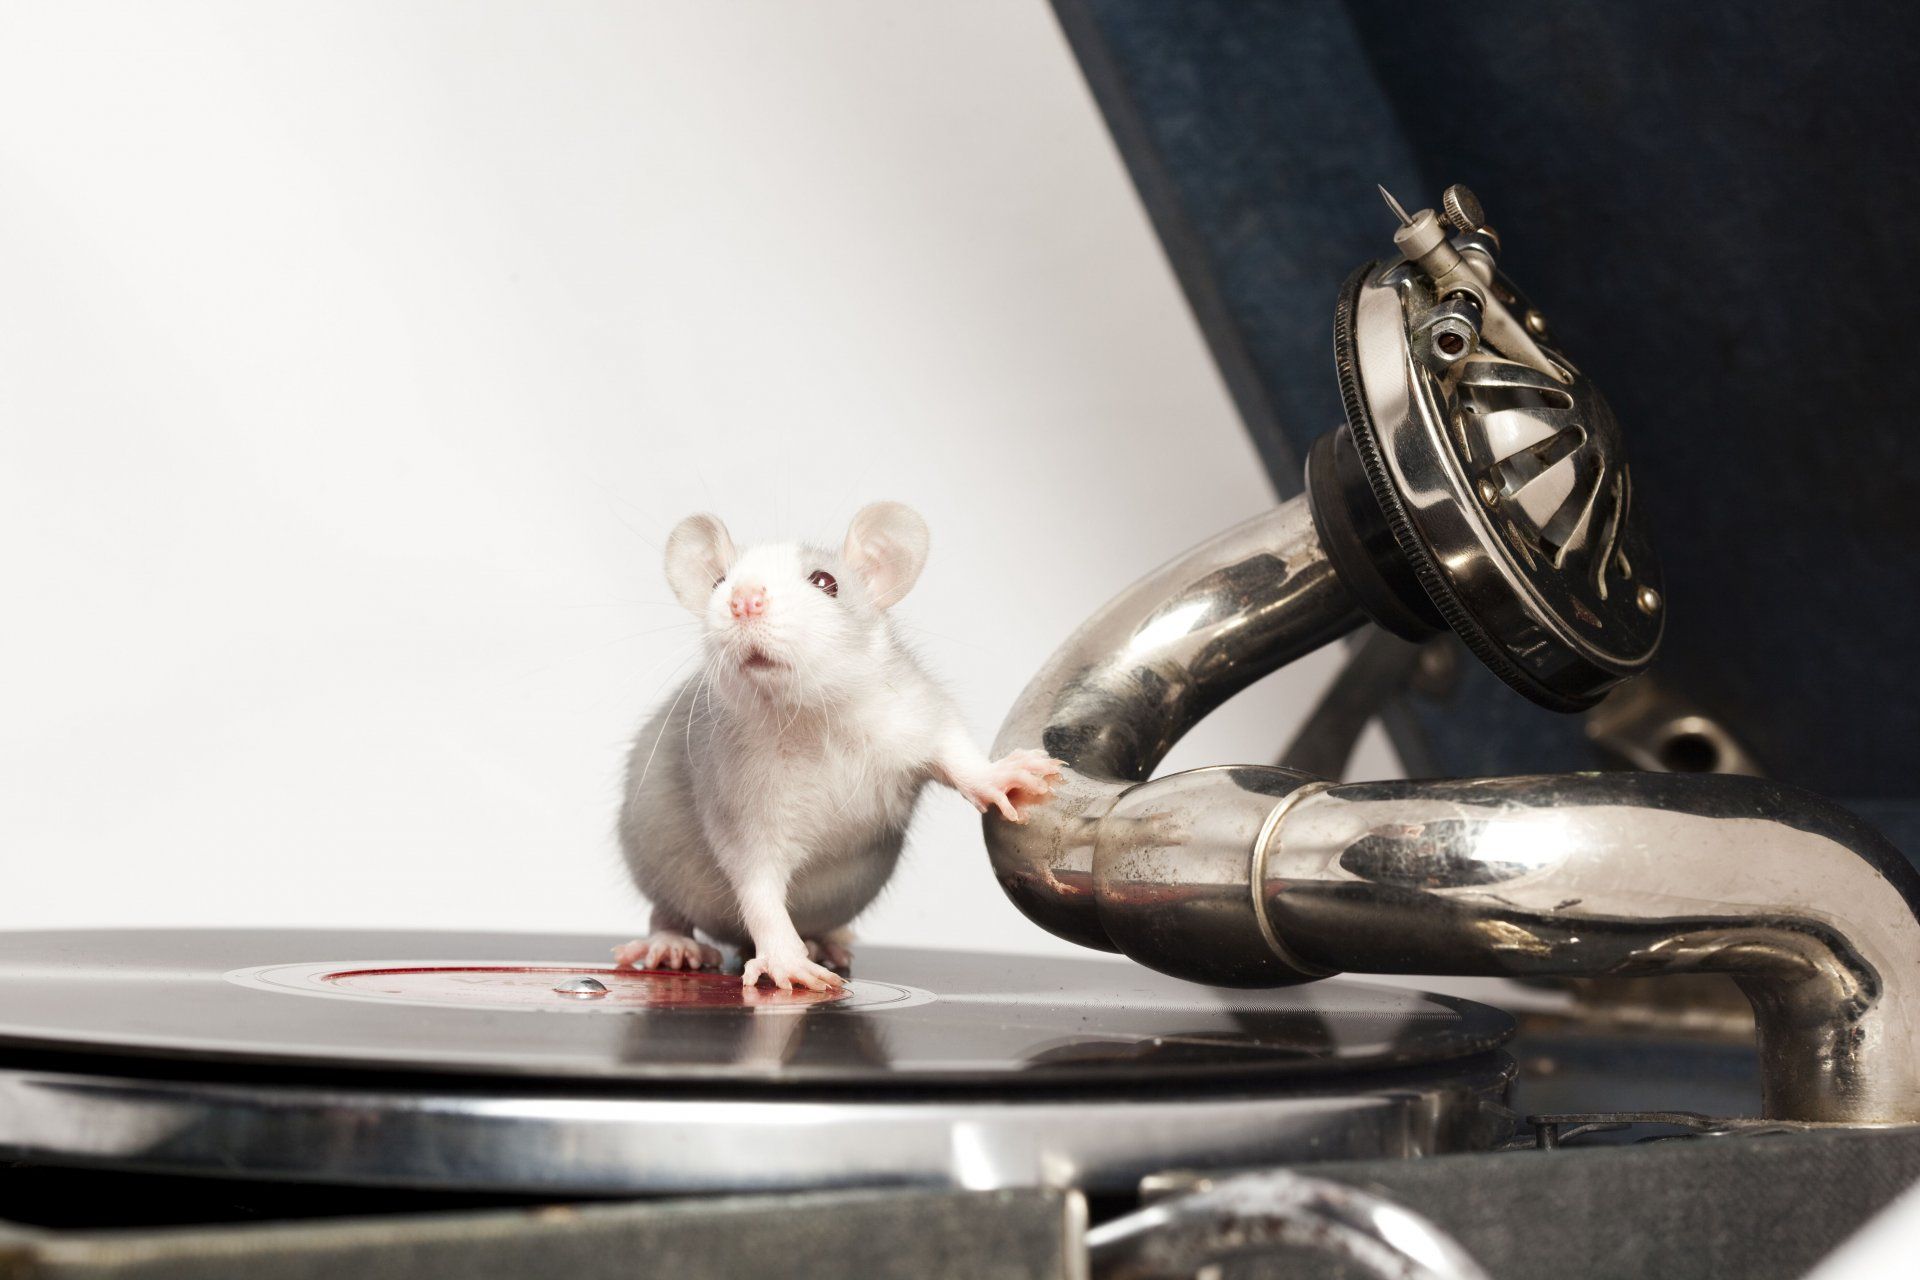 精準地跟著音樂節拍律動被認為是人類與生俱來的能力。然而，新研究表明，老鼠也有這種能力。